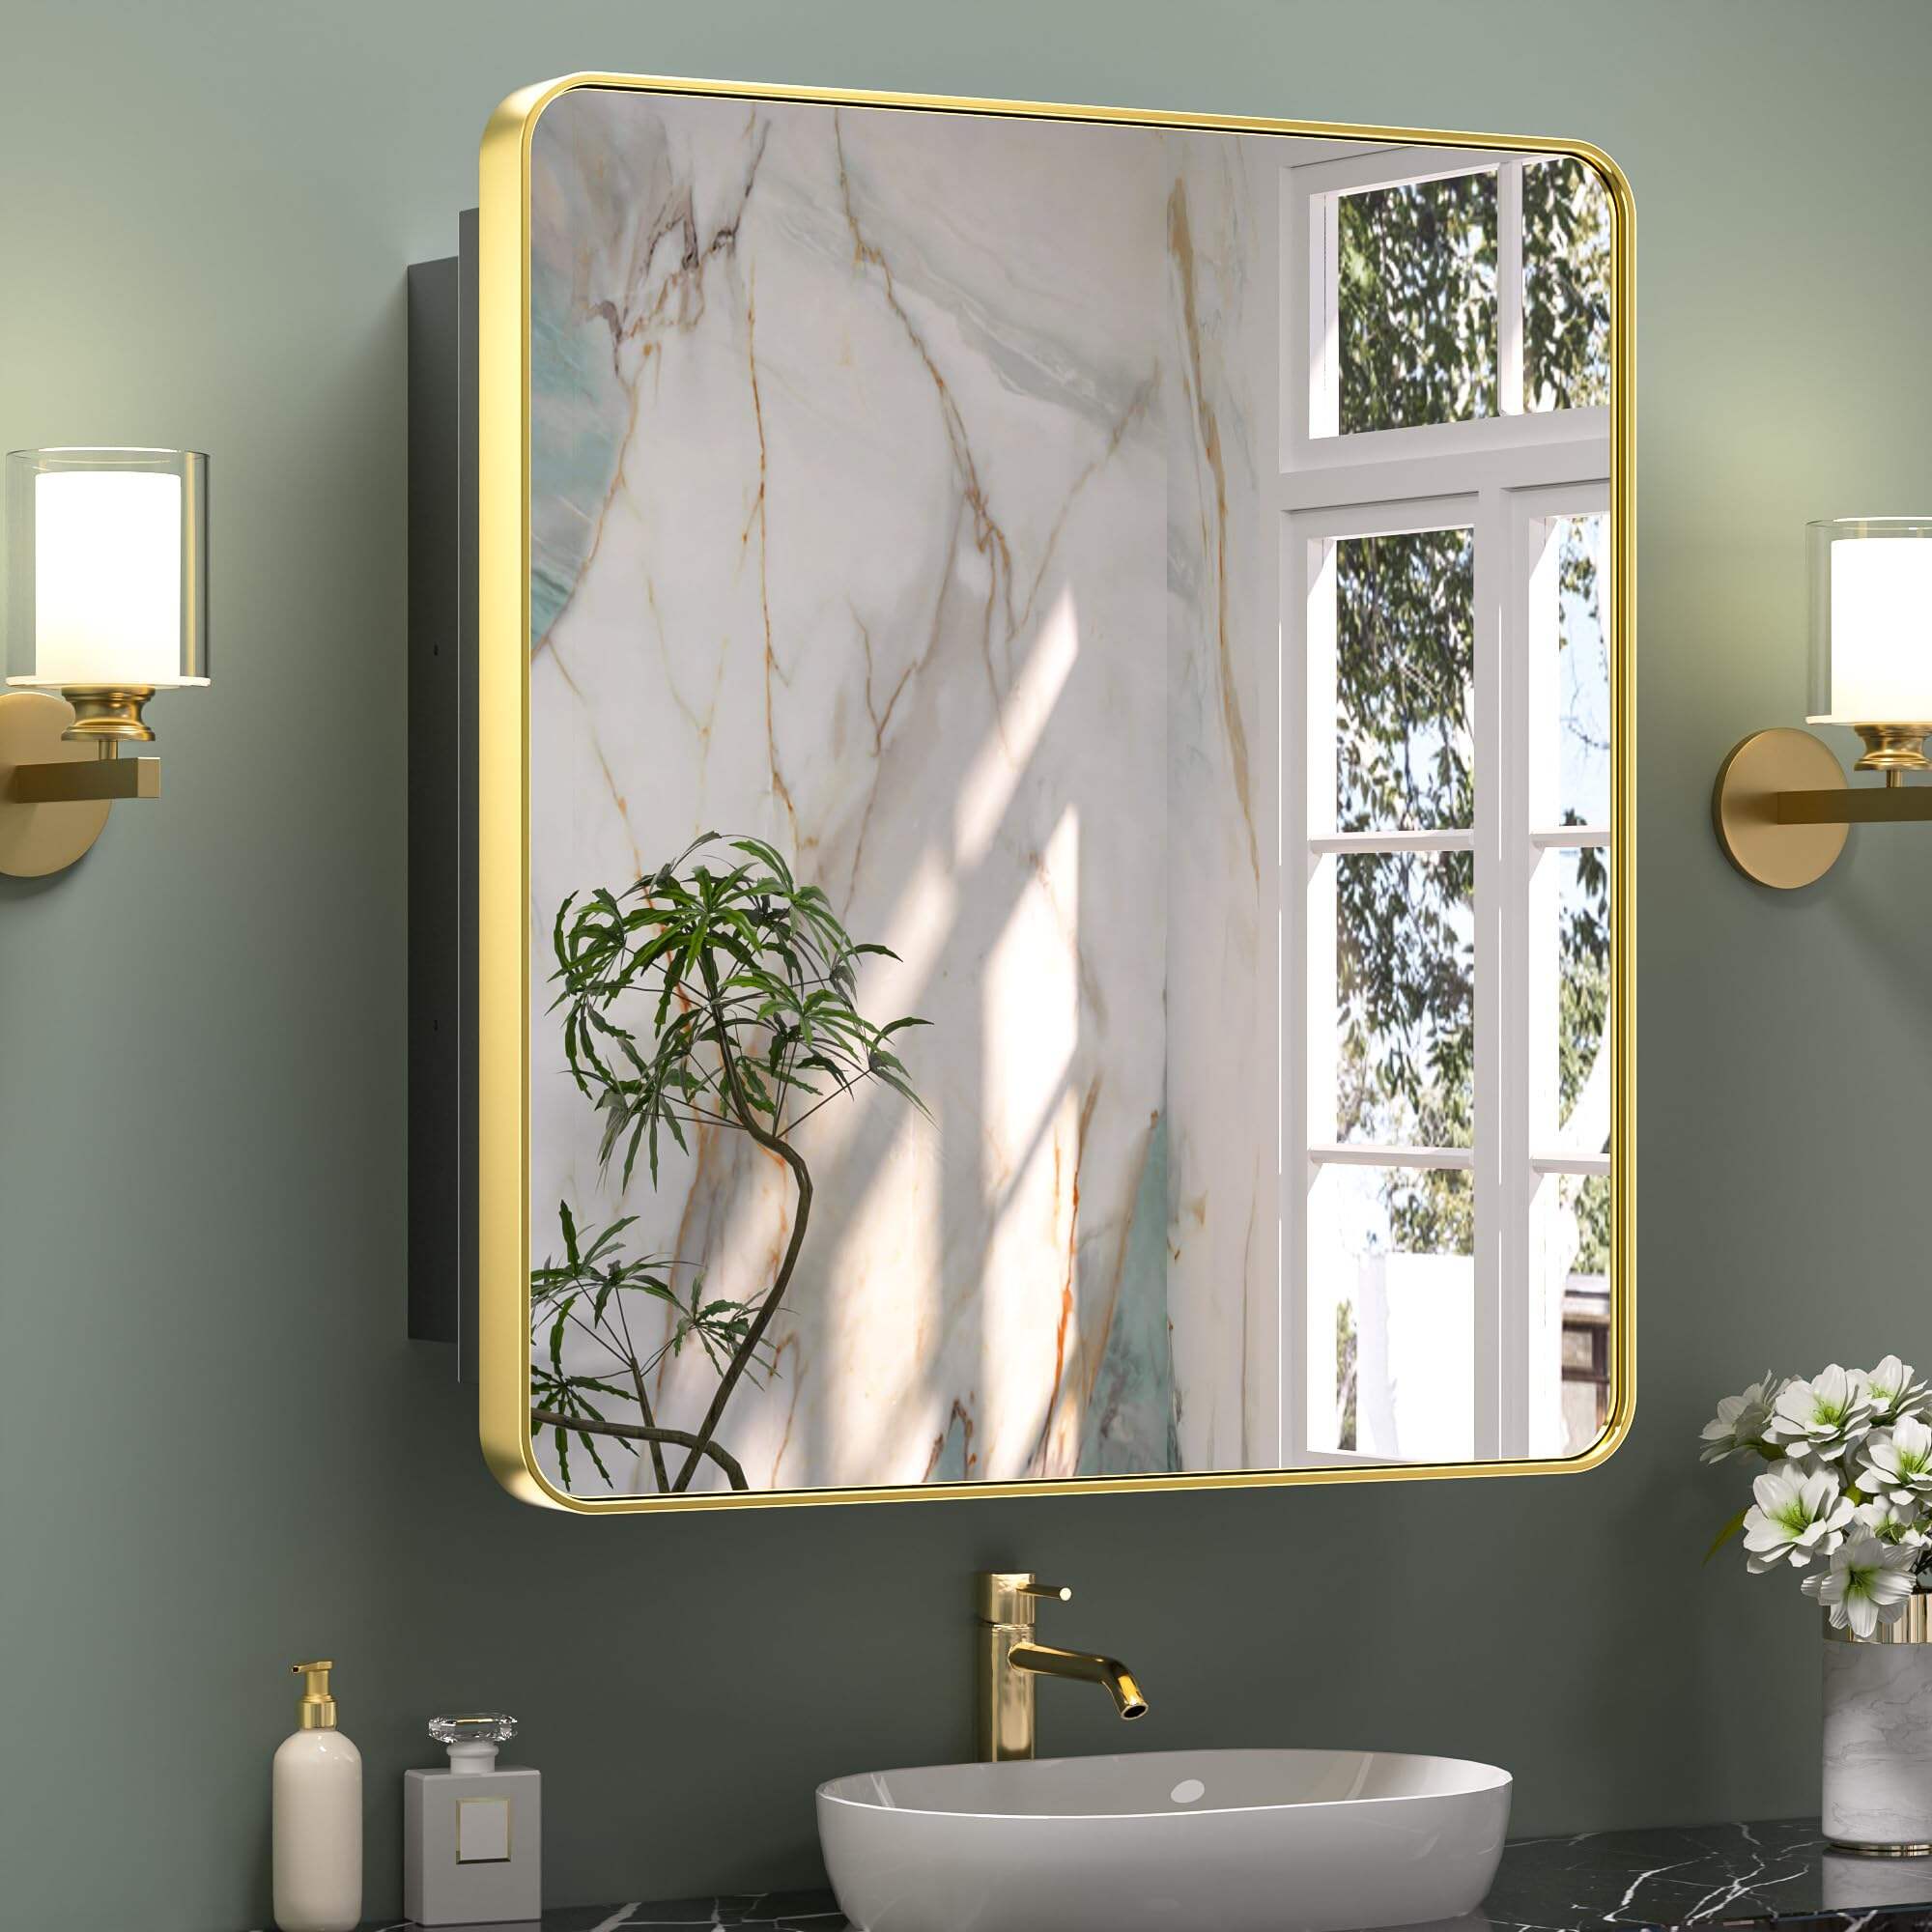 Foshan Haohan Smart Home Co., Ltd. 30 х 32 инчийн толин тусгалтай алтан эмийн шүүгээ Угаалгын өрөөний тохируулгатай тавиуртай Зэвэрдэггүй ган хүрээтэй, нэг хаалгатай дугуй хэлбэртэй тэгш өнцөгт хананд суурилуулсан, тольтой угаалгын өрөөний хадгалах шүүгээ